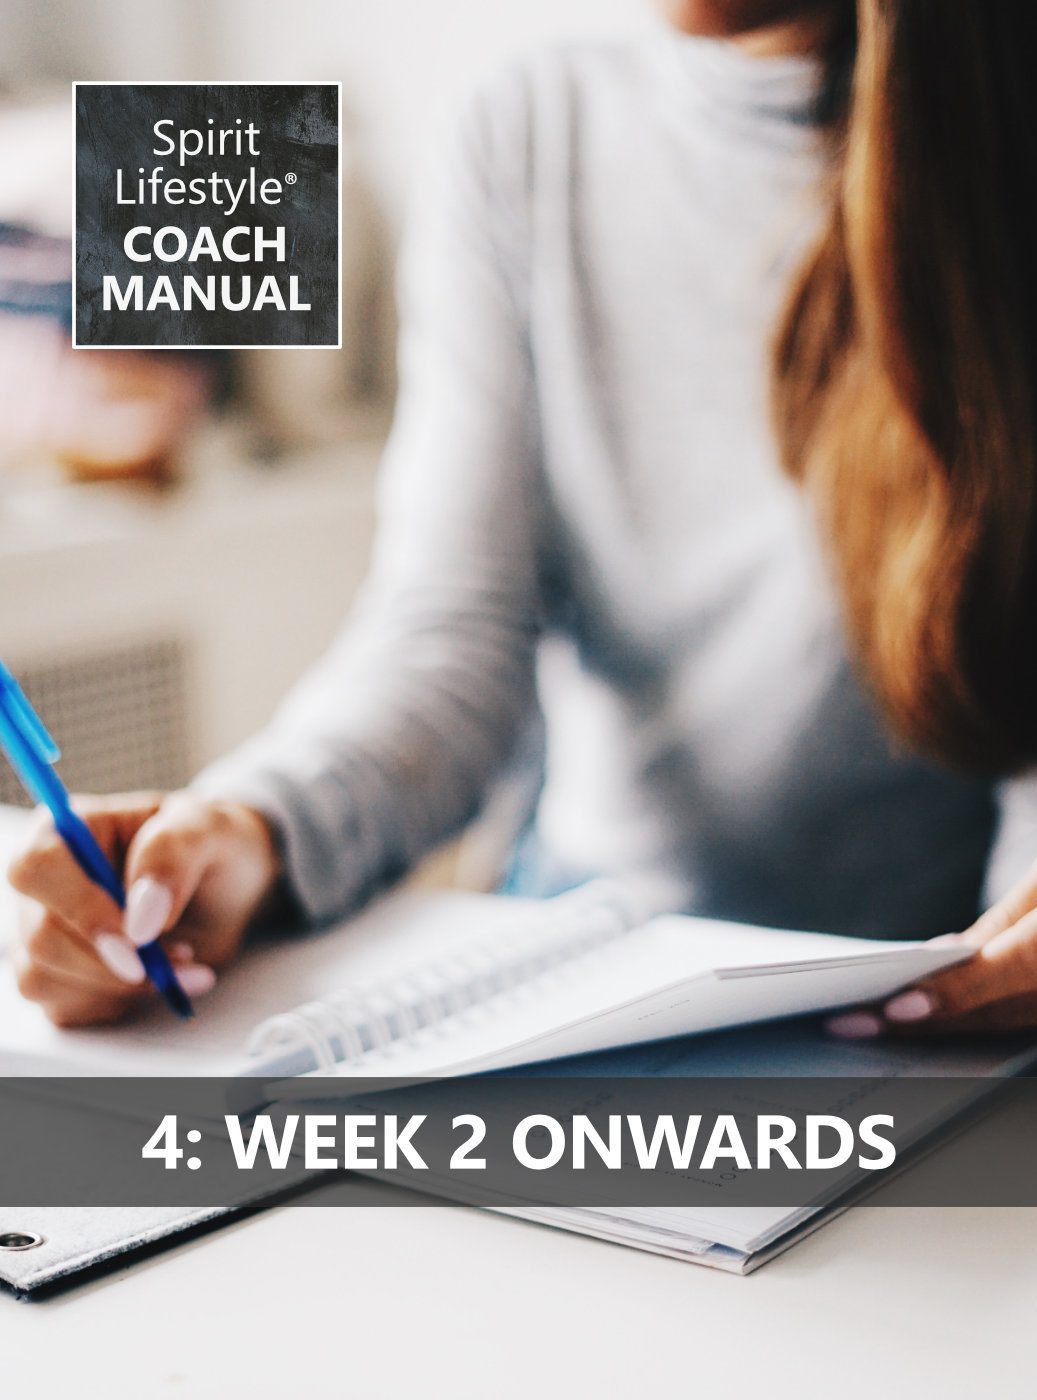 Spirit Lifestyle Coach Manual 04 week 2 onwards